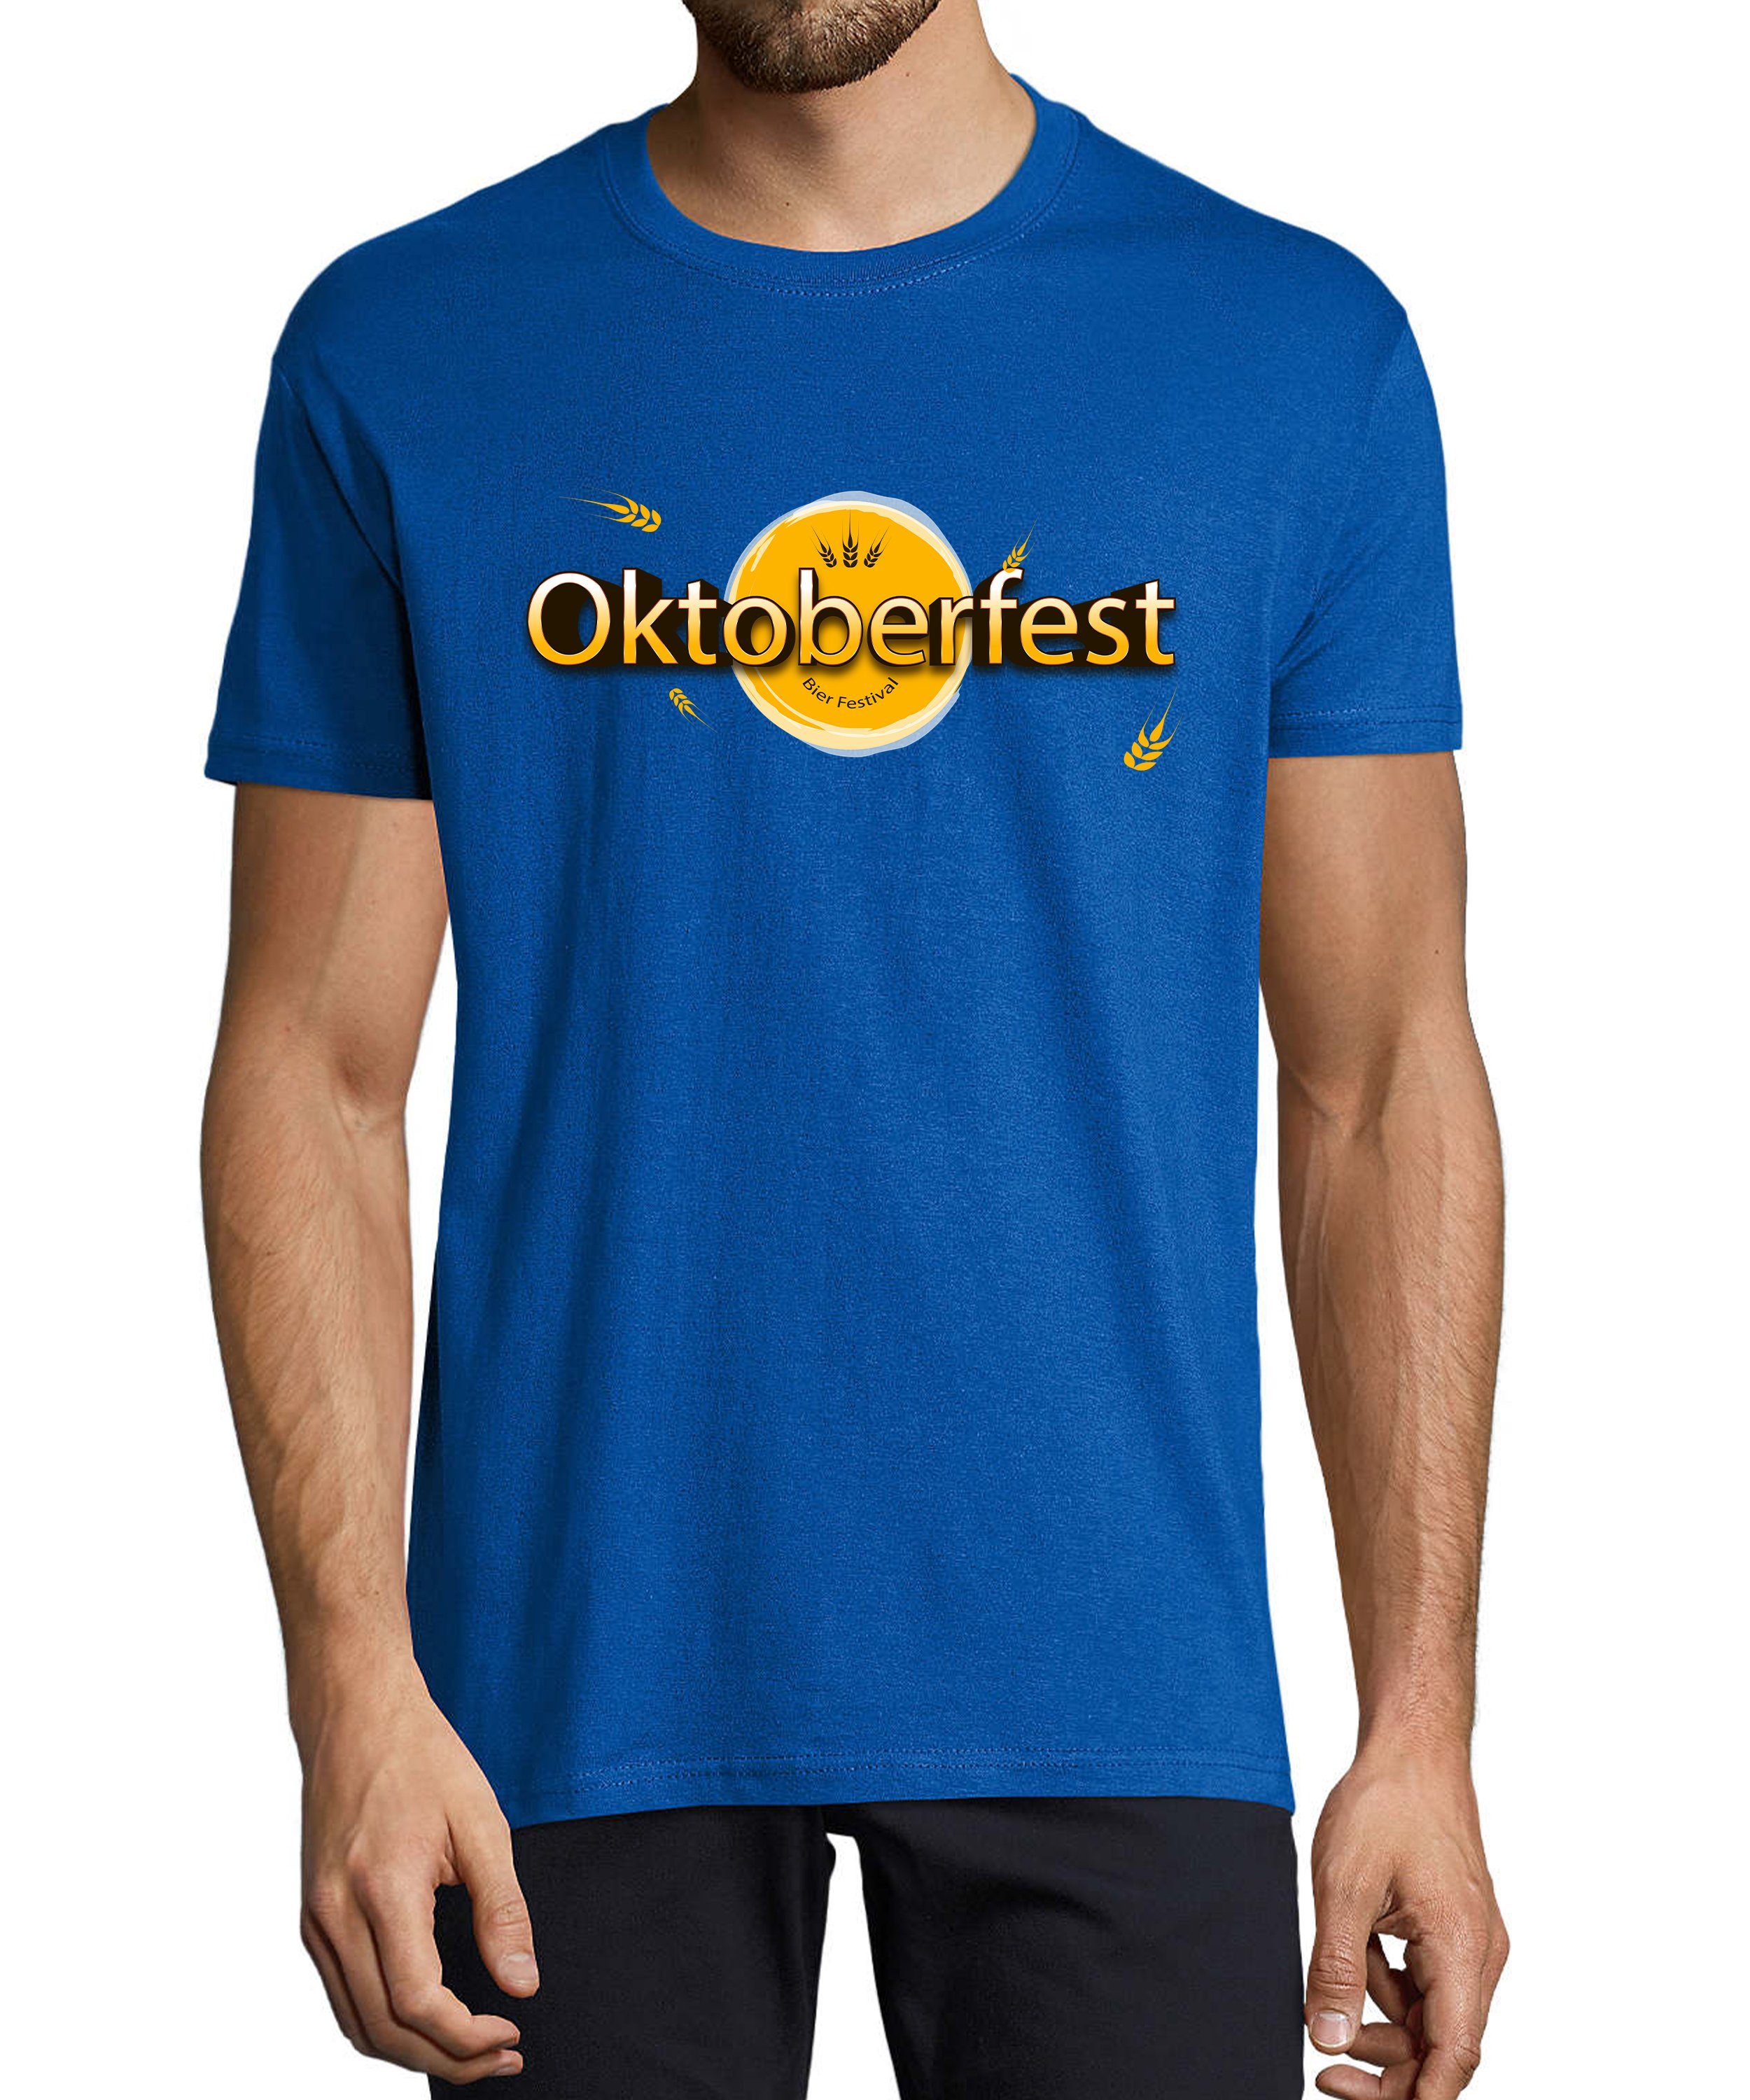 MyDesign24 T-Shirt Herren Party Shirt - Trinkshirt Oktoberfest T-Shirt Bier Festival Baumwollshirt mit Aufdruck Regular Fit, i325 royal blau